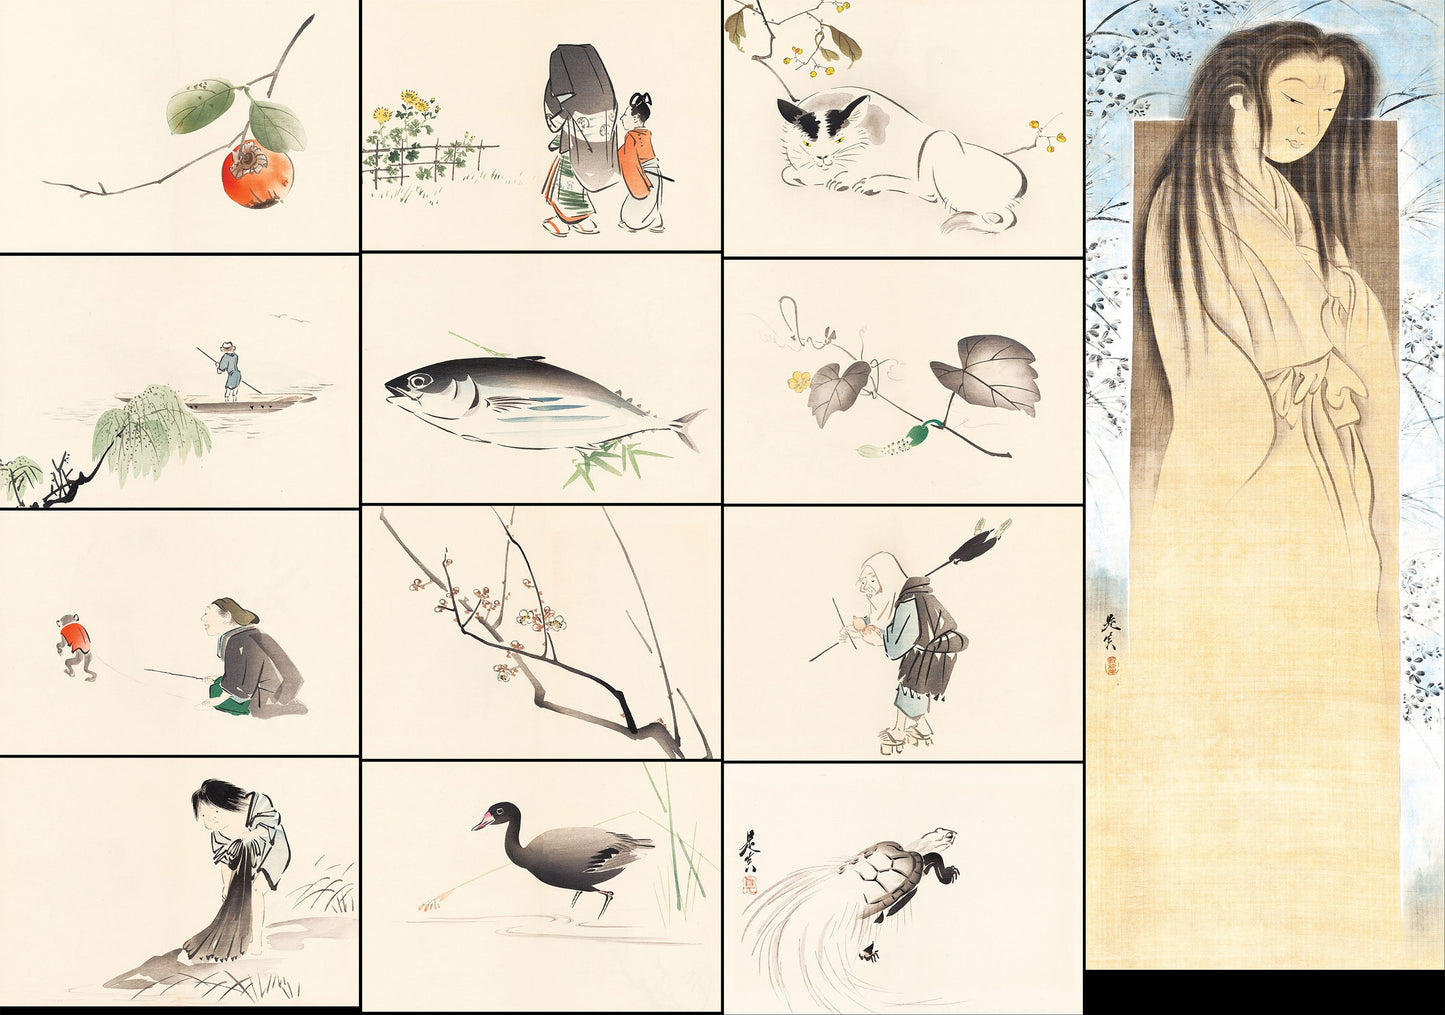 Shibata Zeshin Japanese Paintings [13 Images]